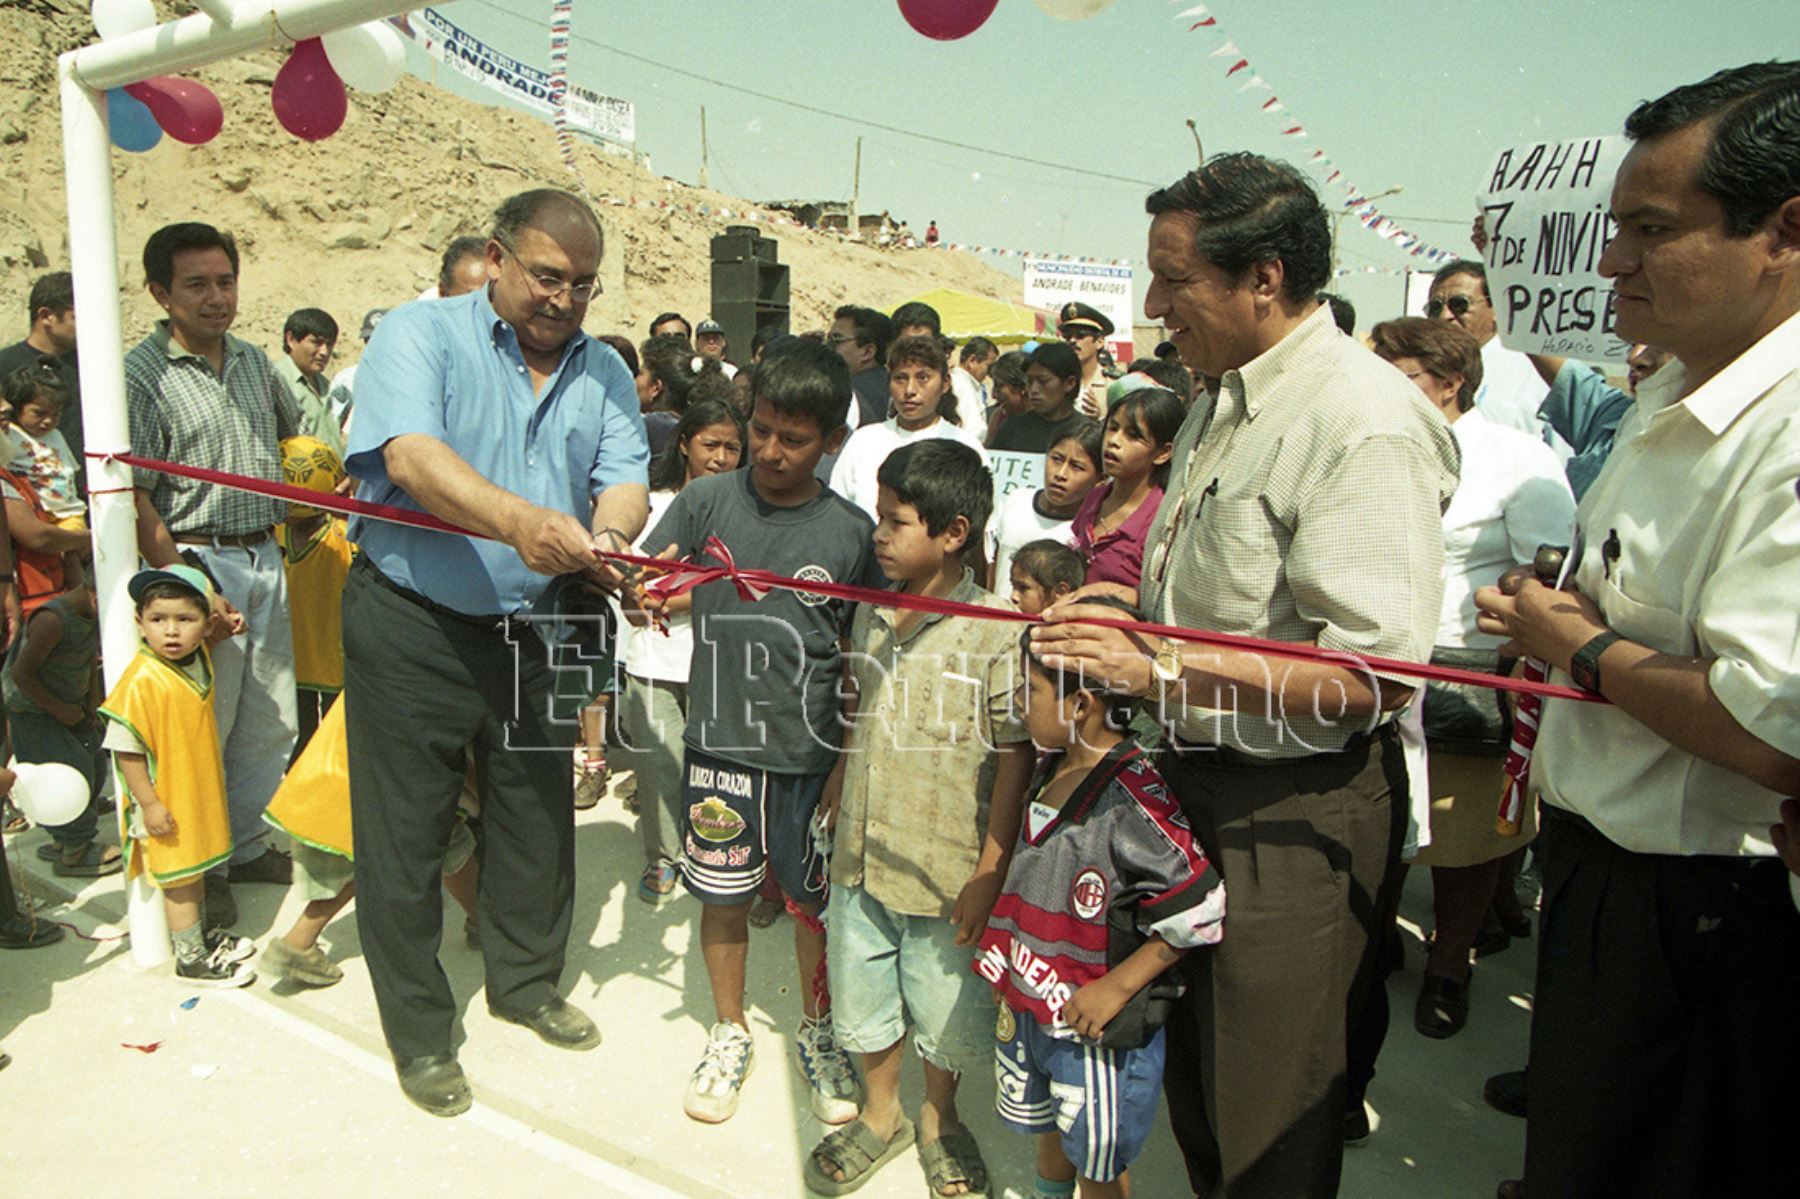 Lima - 20 febrero 2001 / El alcalde Alberto Andrade Carmona inaugura obras en el asentamiento humano Huaycán. Foto: Archivo Histórico de EL PERUANO / Wendy Higuchi